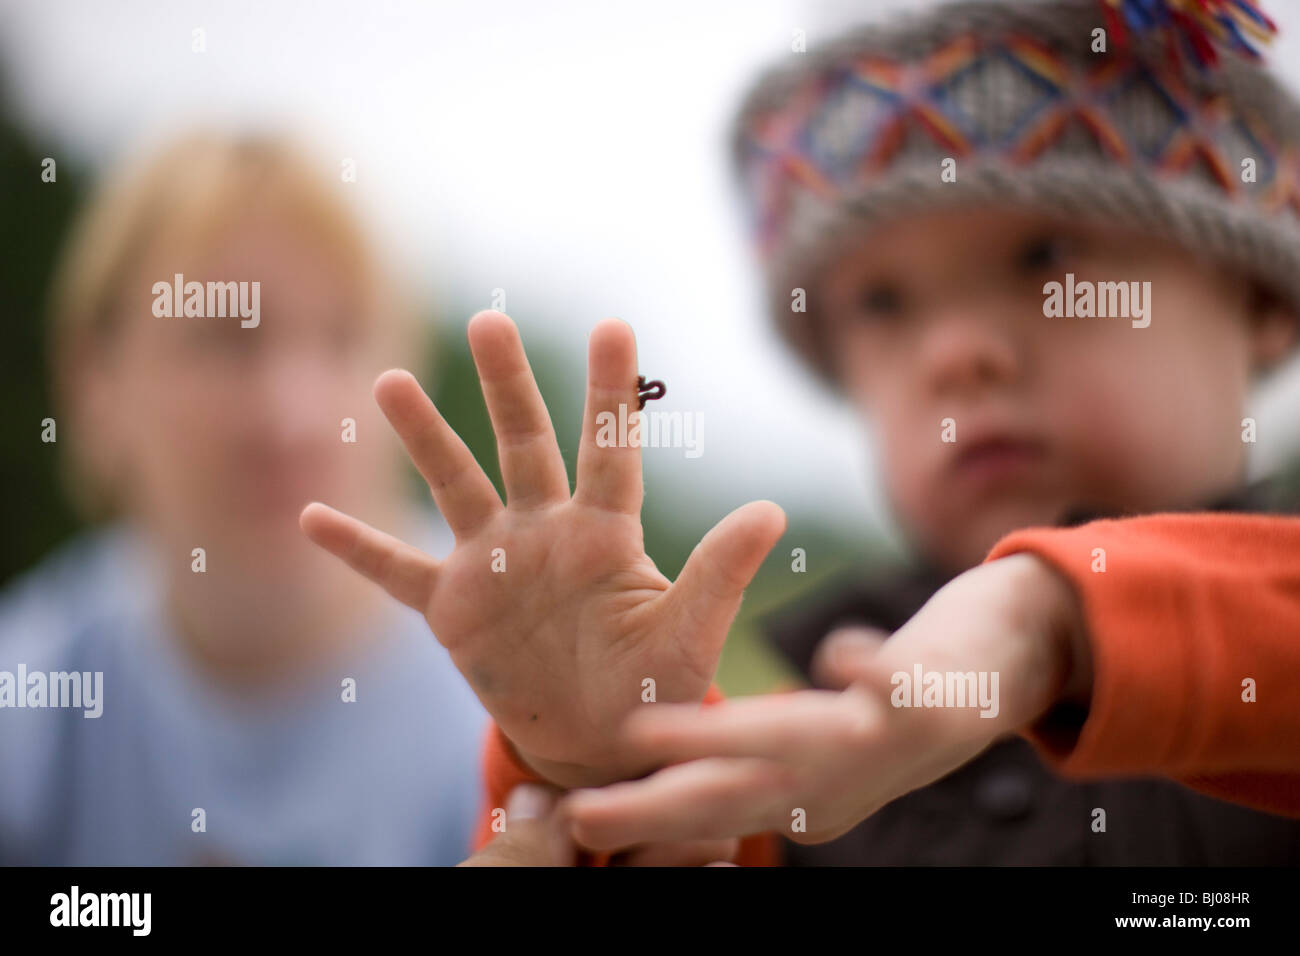 Kleiner Junge eine Raupe kriecht auf seiner Hand zu betrachten. Stockfoto